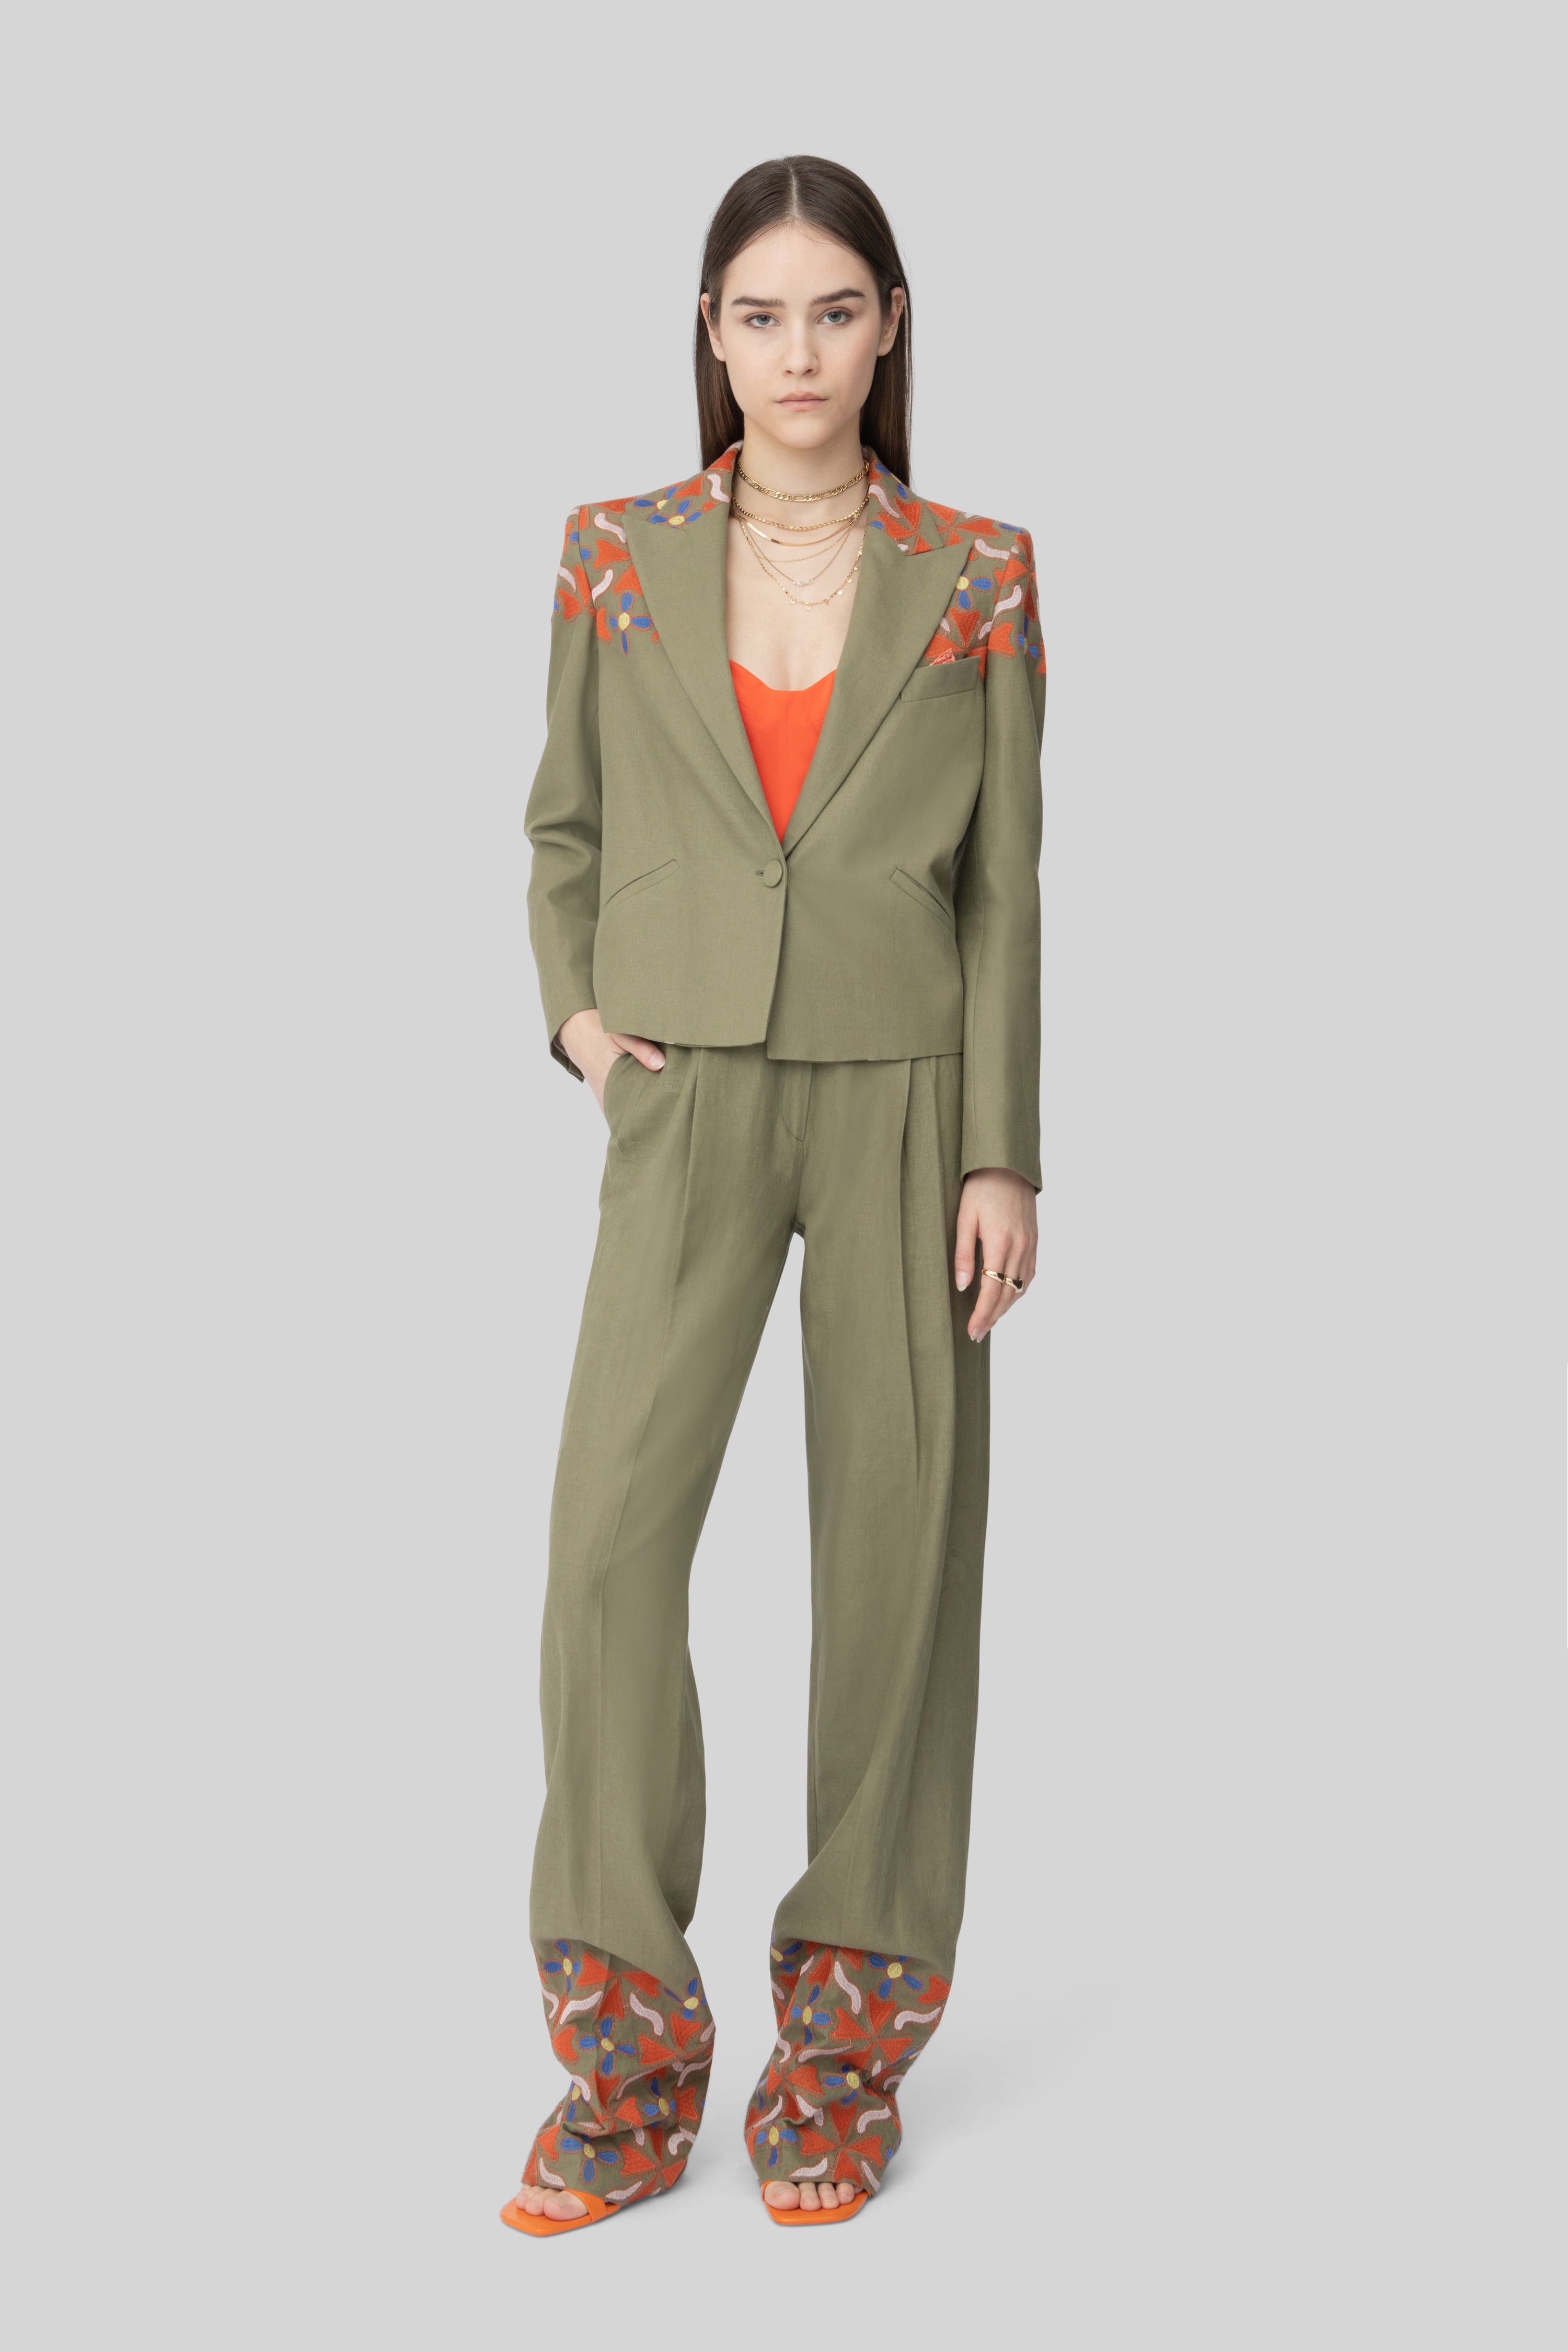 The Army Green & Orange Embroidered Linen Diane Blazer